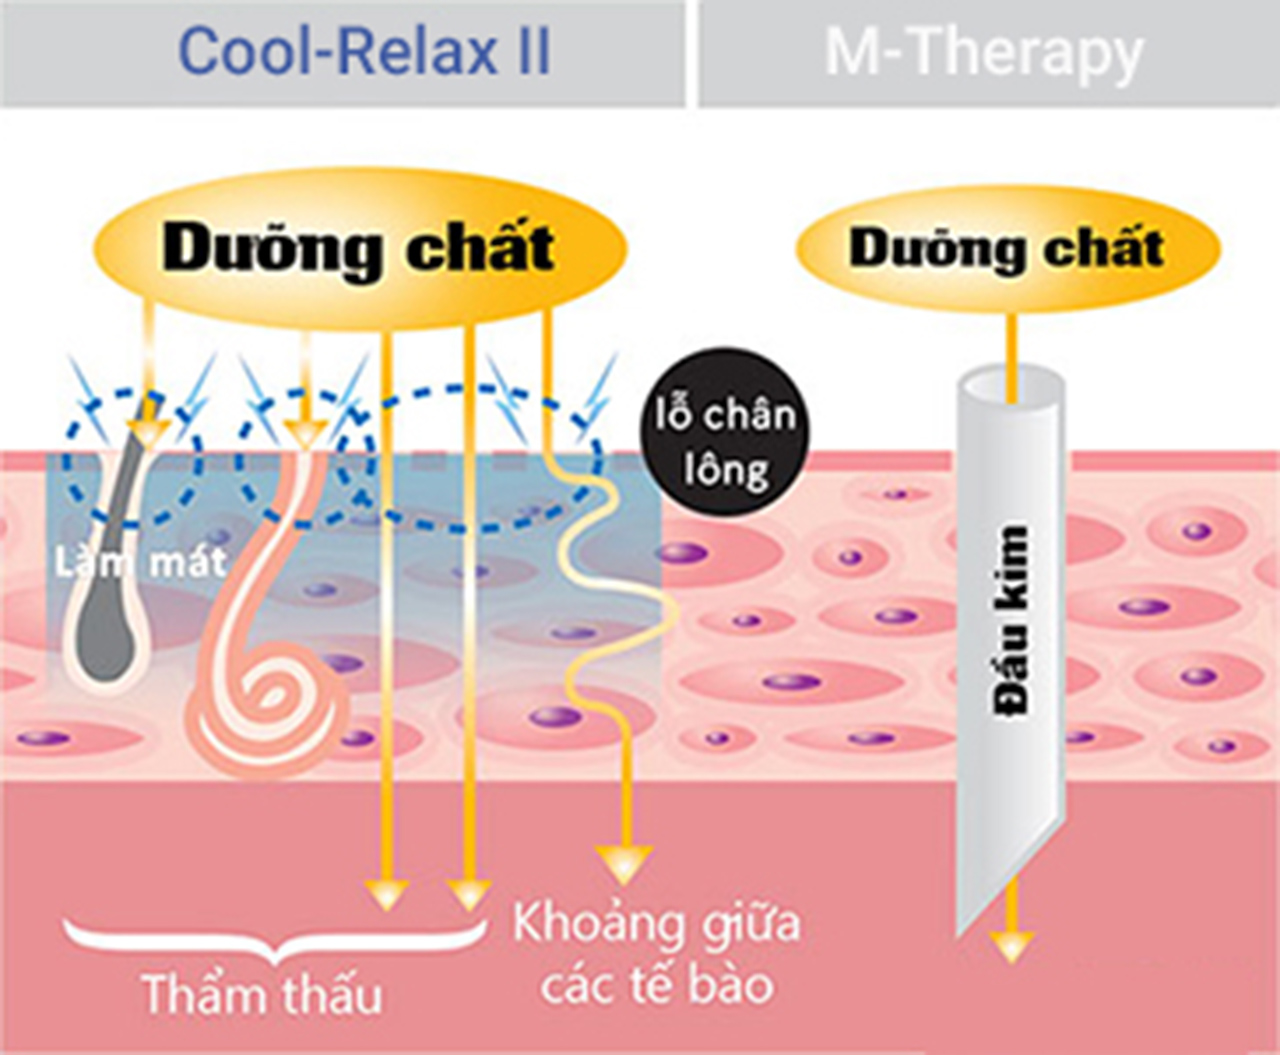 đưa dưỡng chất vào trong da với Thiết bị chăm sóc da cool relax II